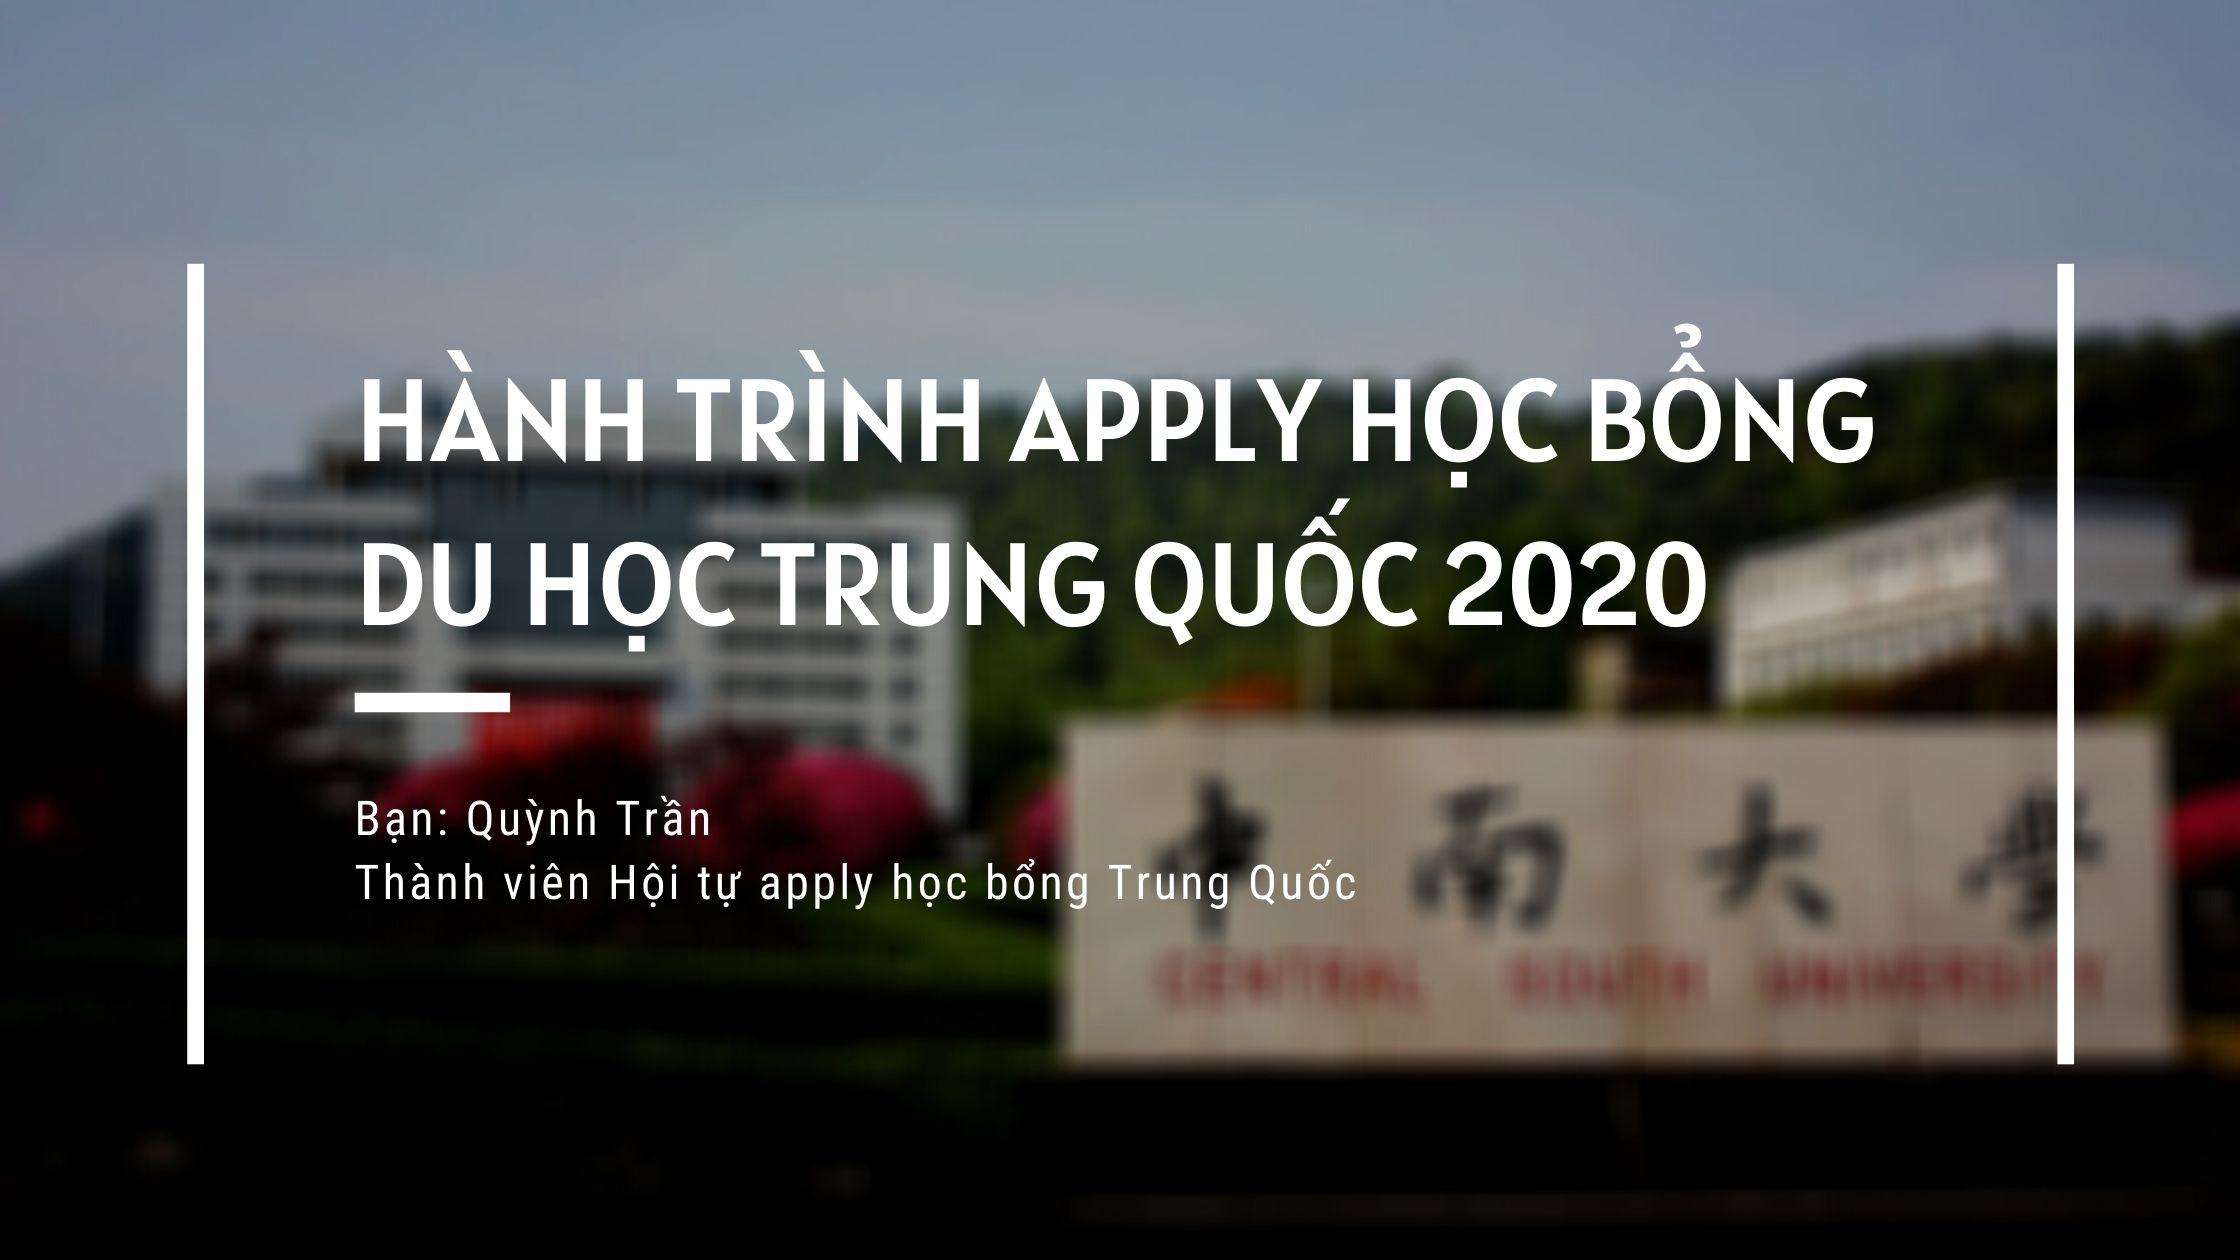 Vinh Danh Người Thắng Cuộc 2020 – Quỳnh Trần